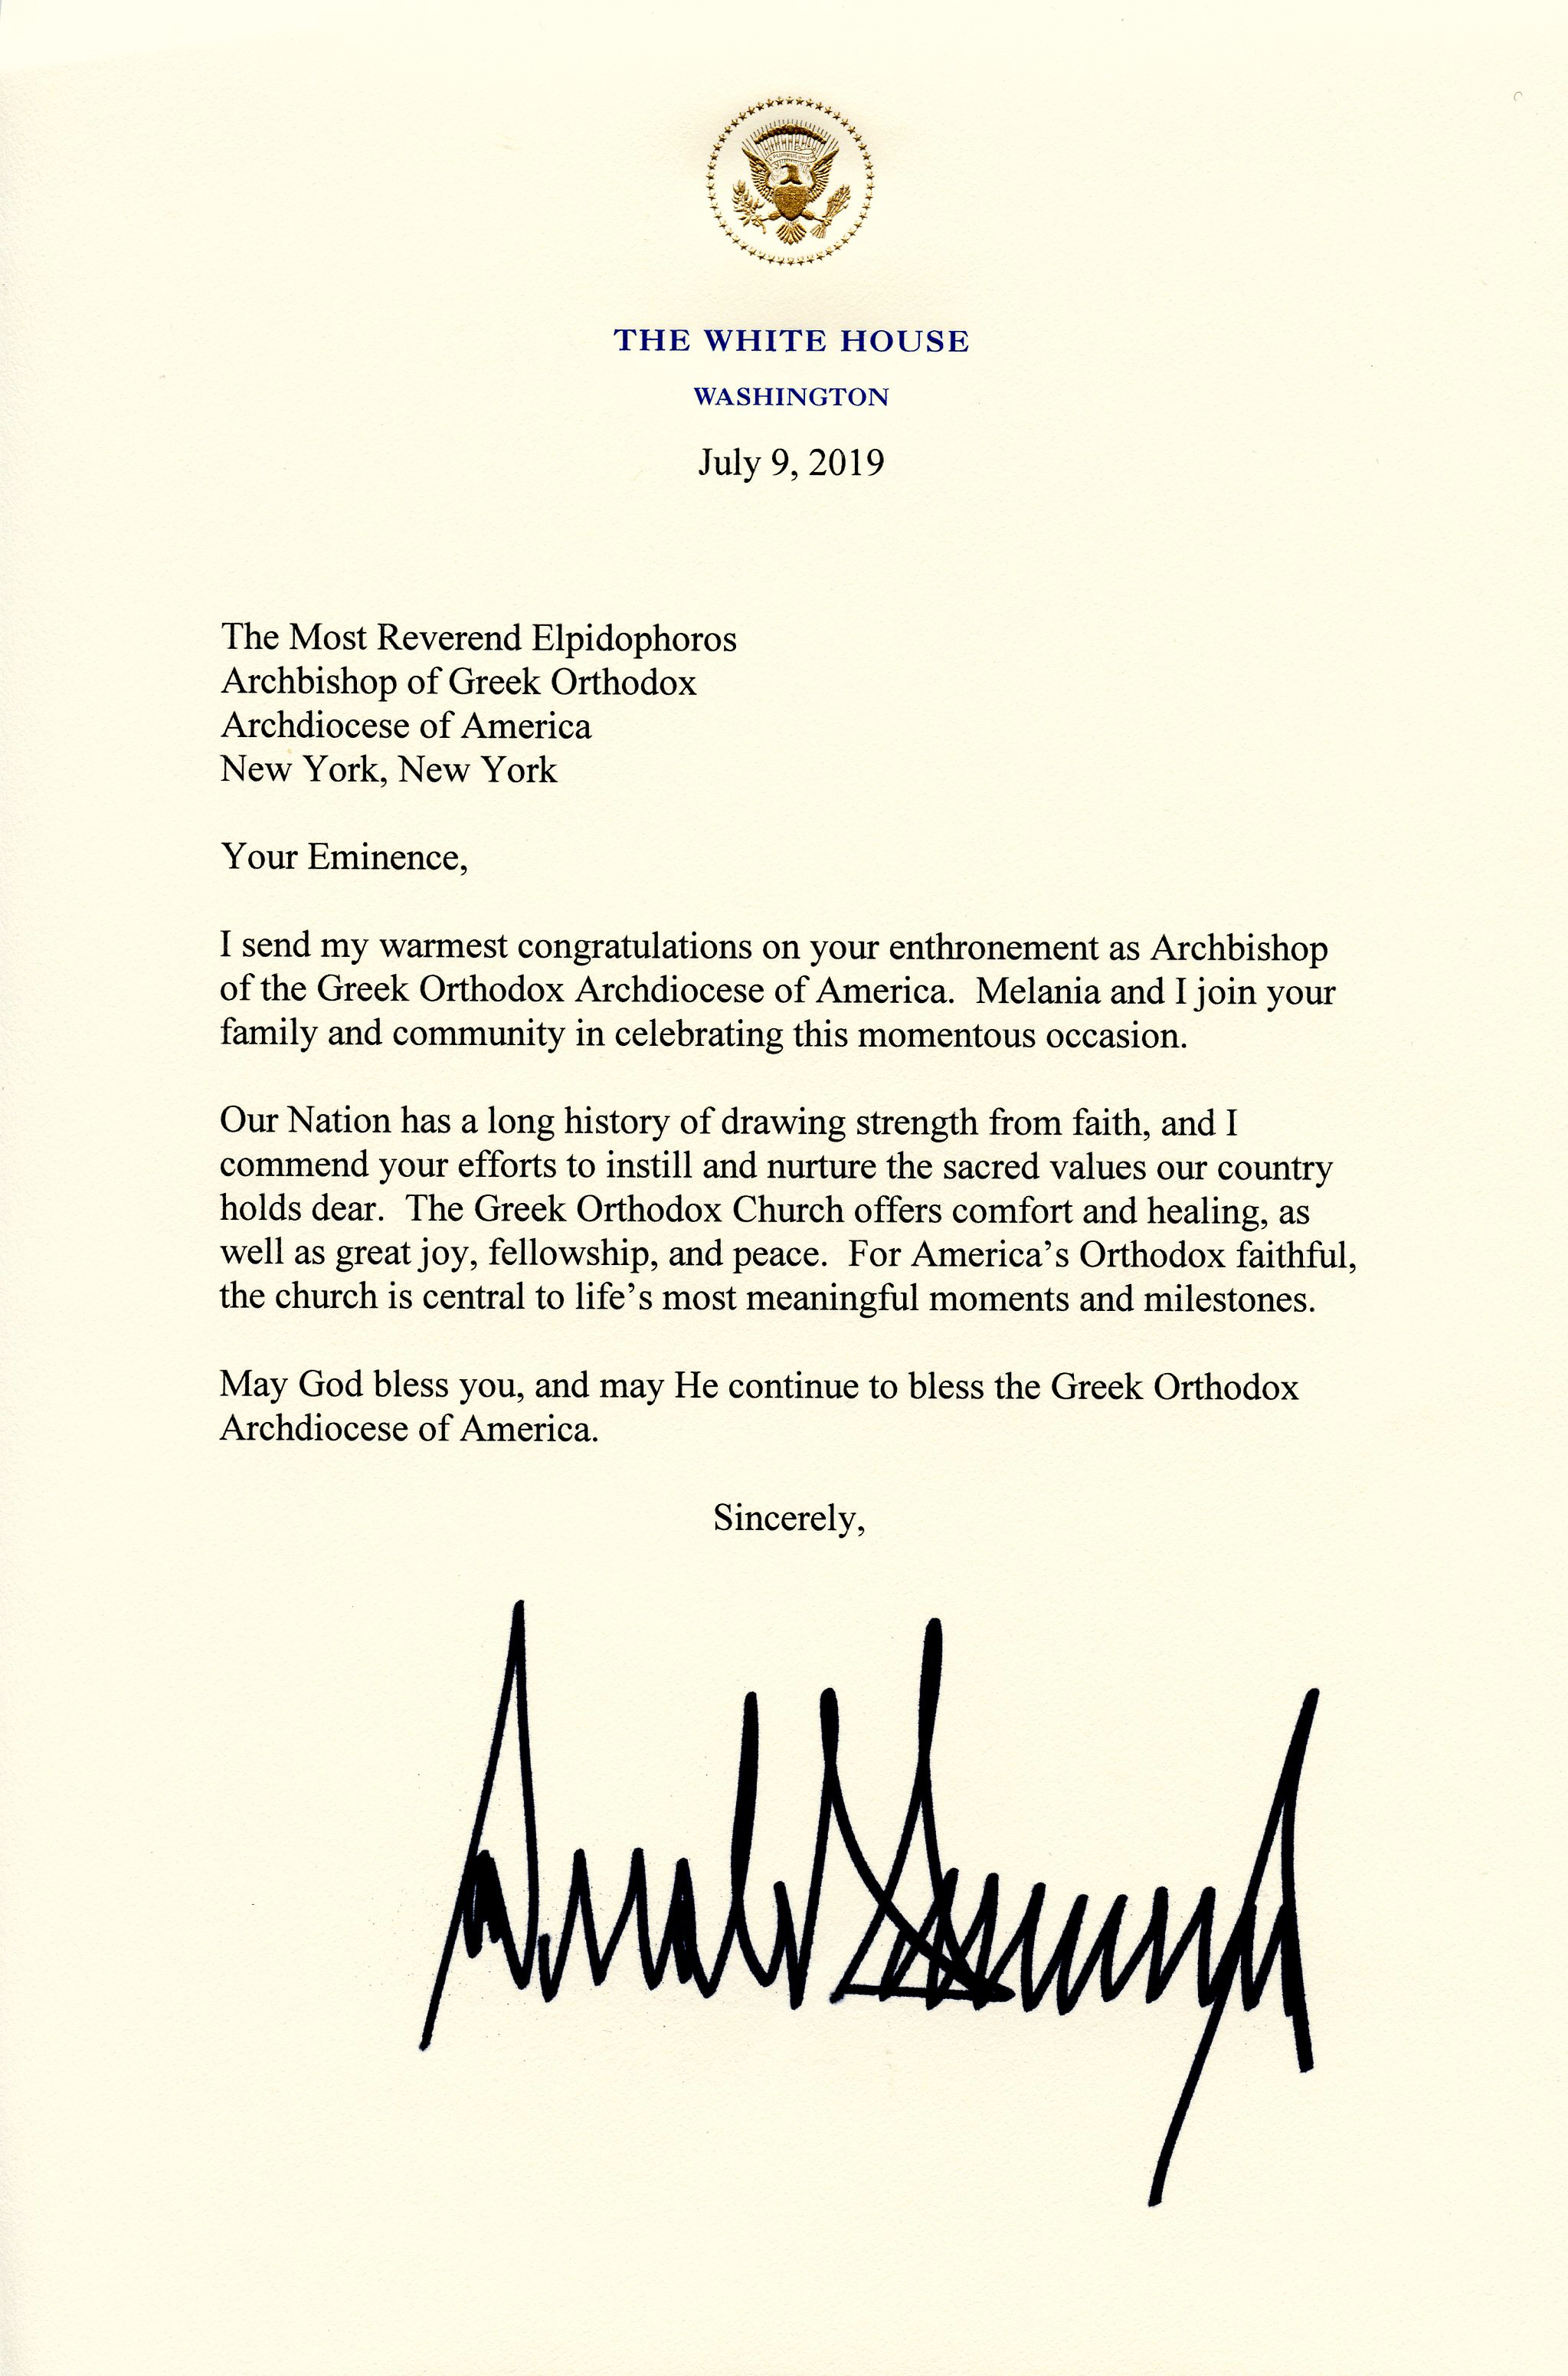 President Trump Sends Congratulatory Letter to Archbishop